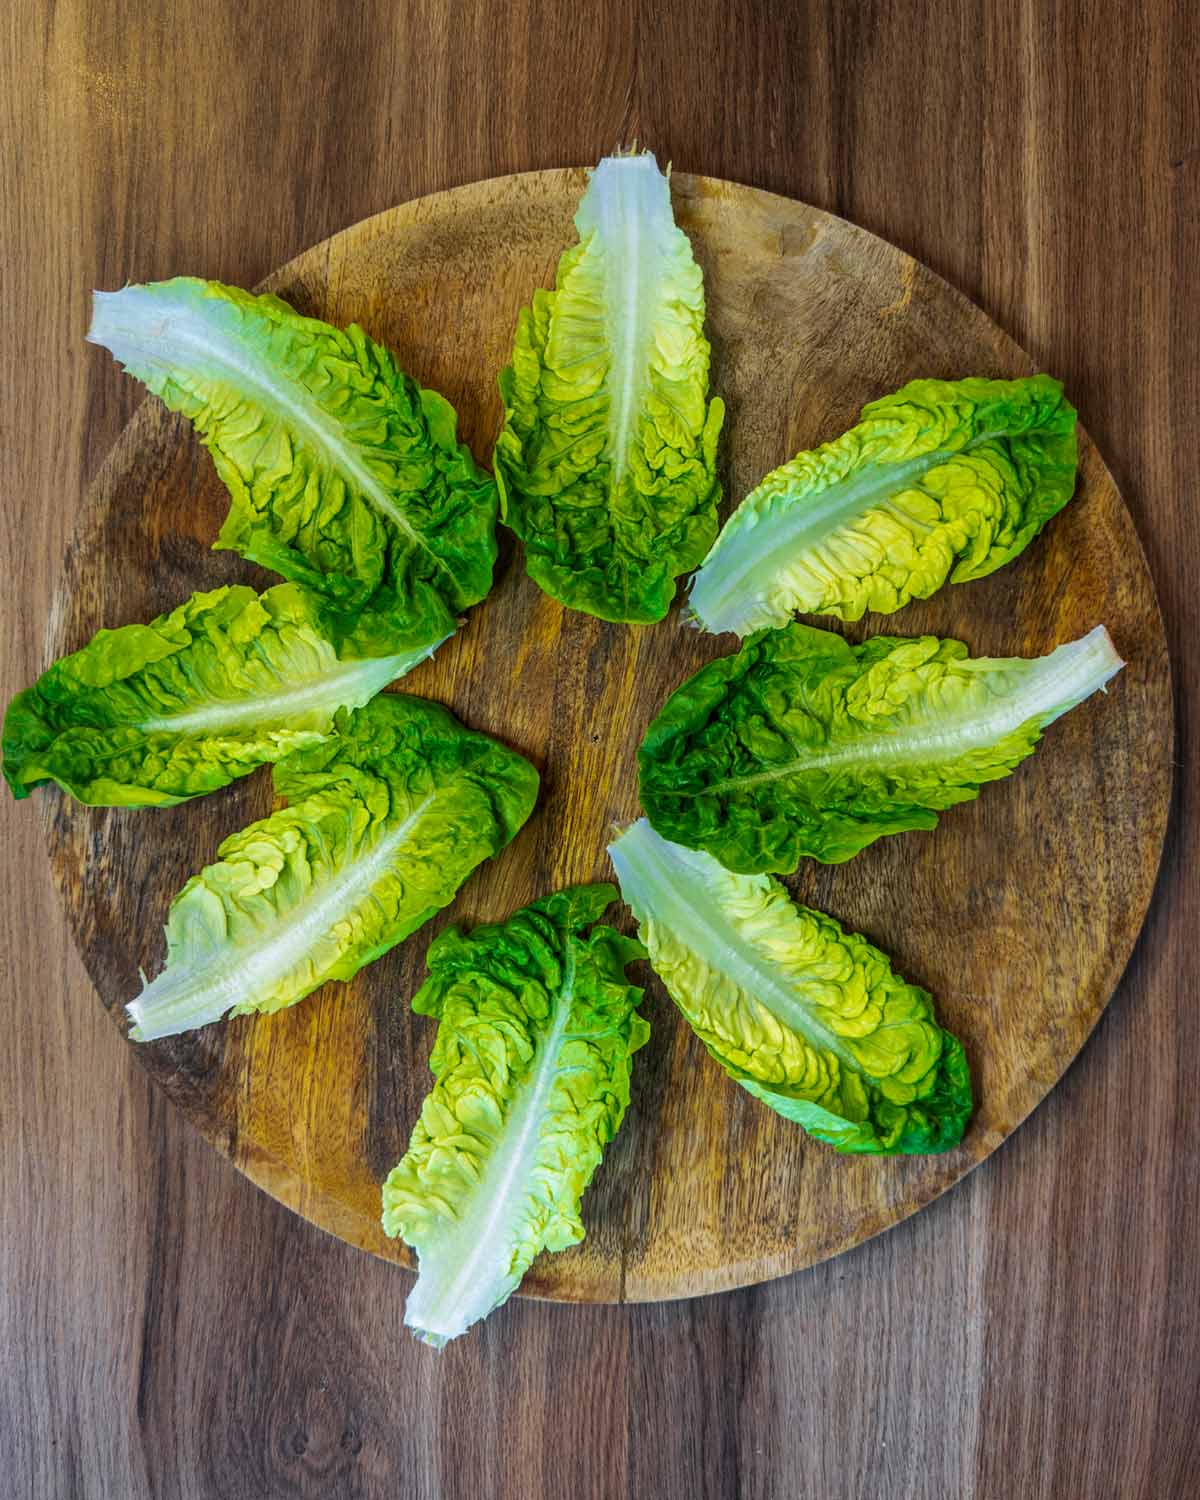 Eight little gem lettuce leaves on a wooden board.